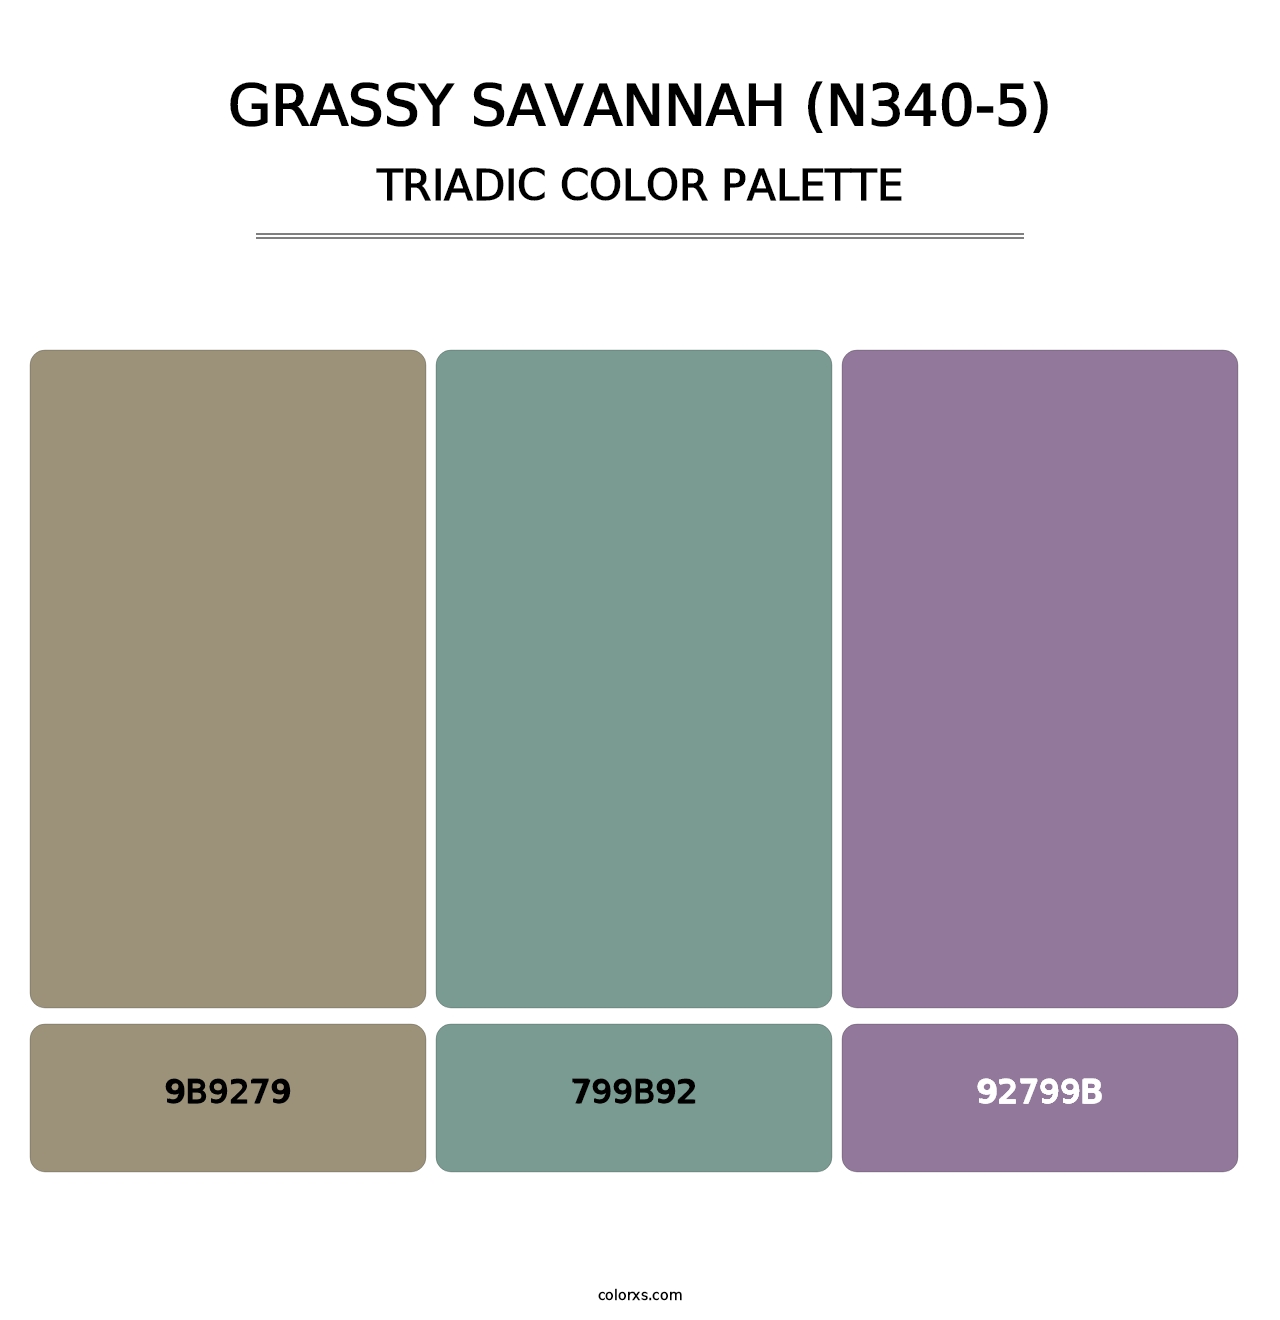 Grassy Savannah (N340-5) - Triadic Color Palette